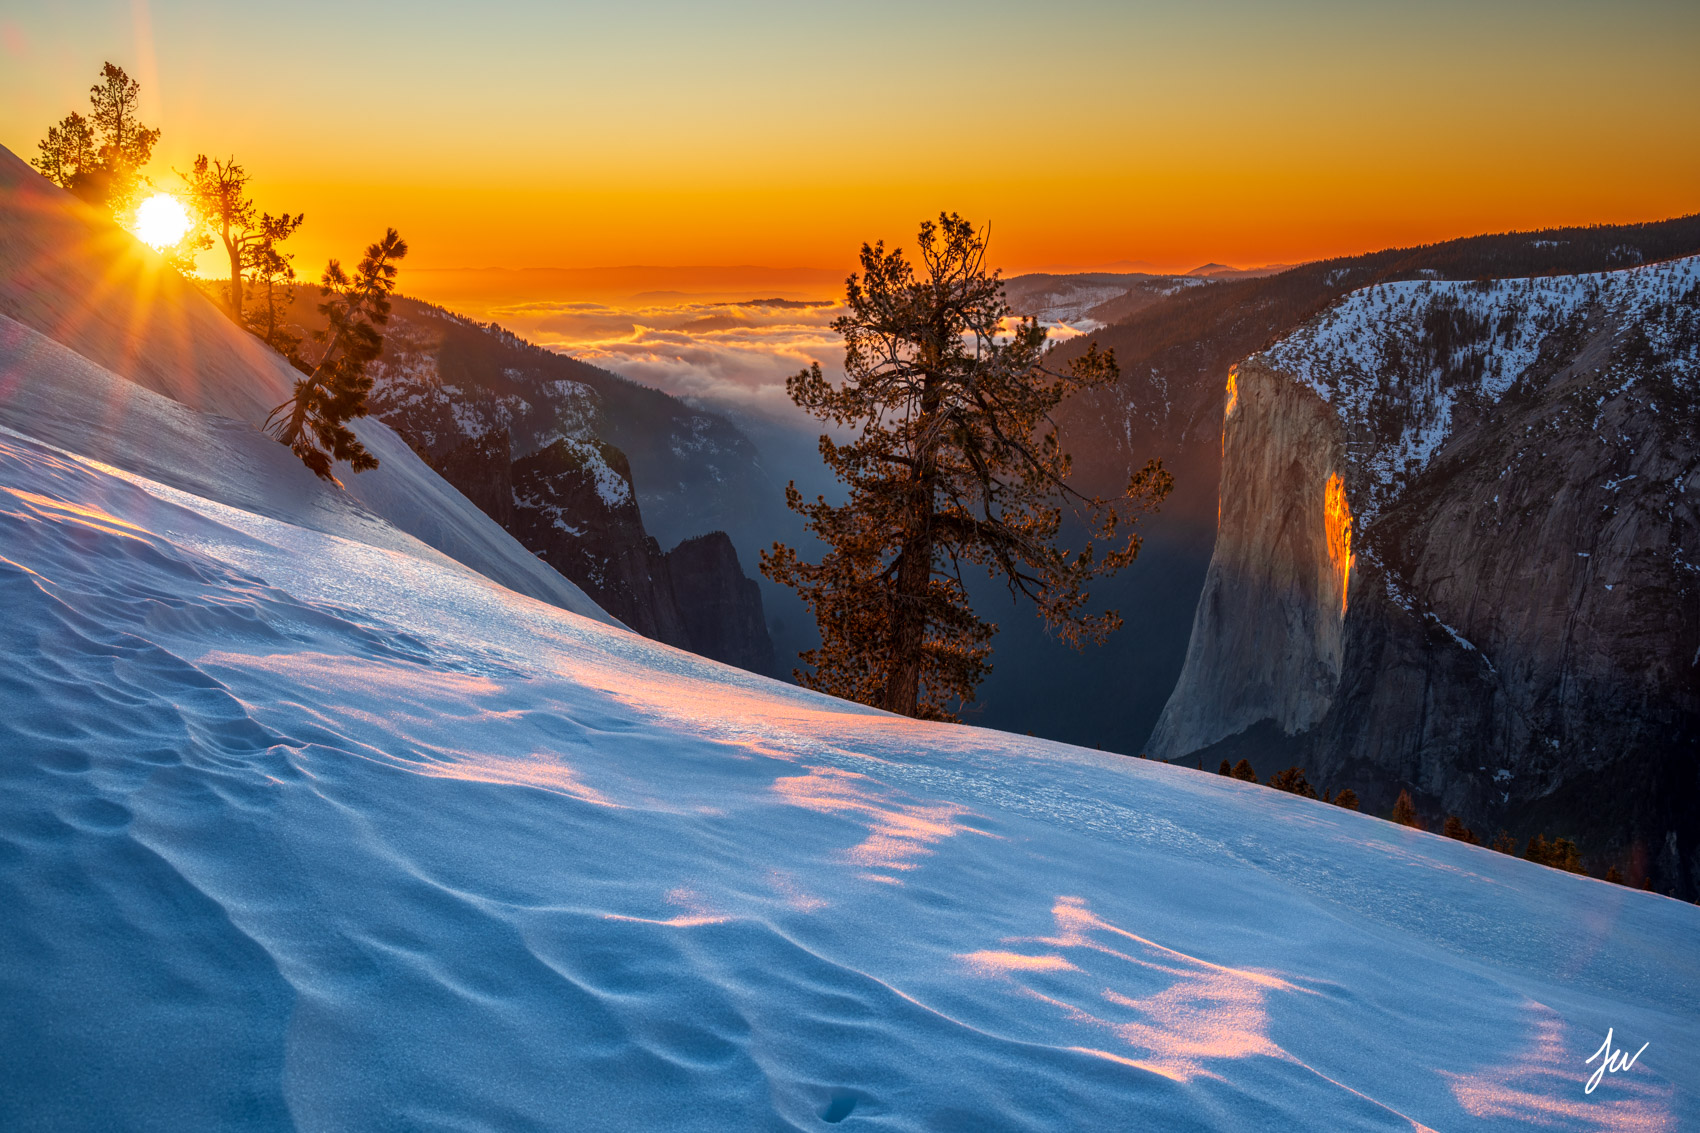 El Capitan winter sunset in Yosemite.